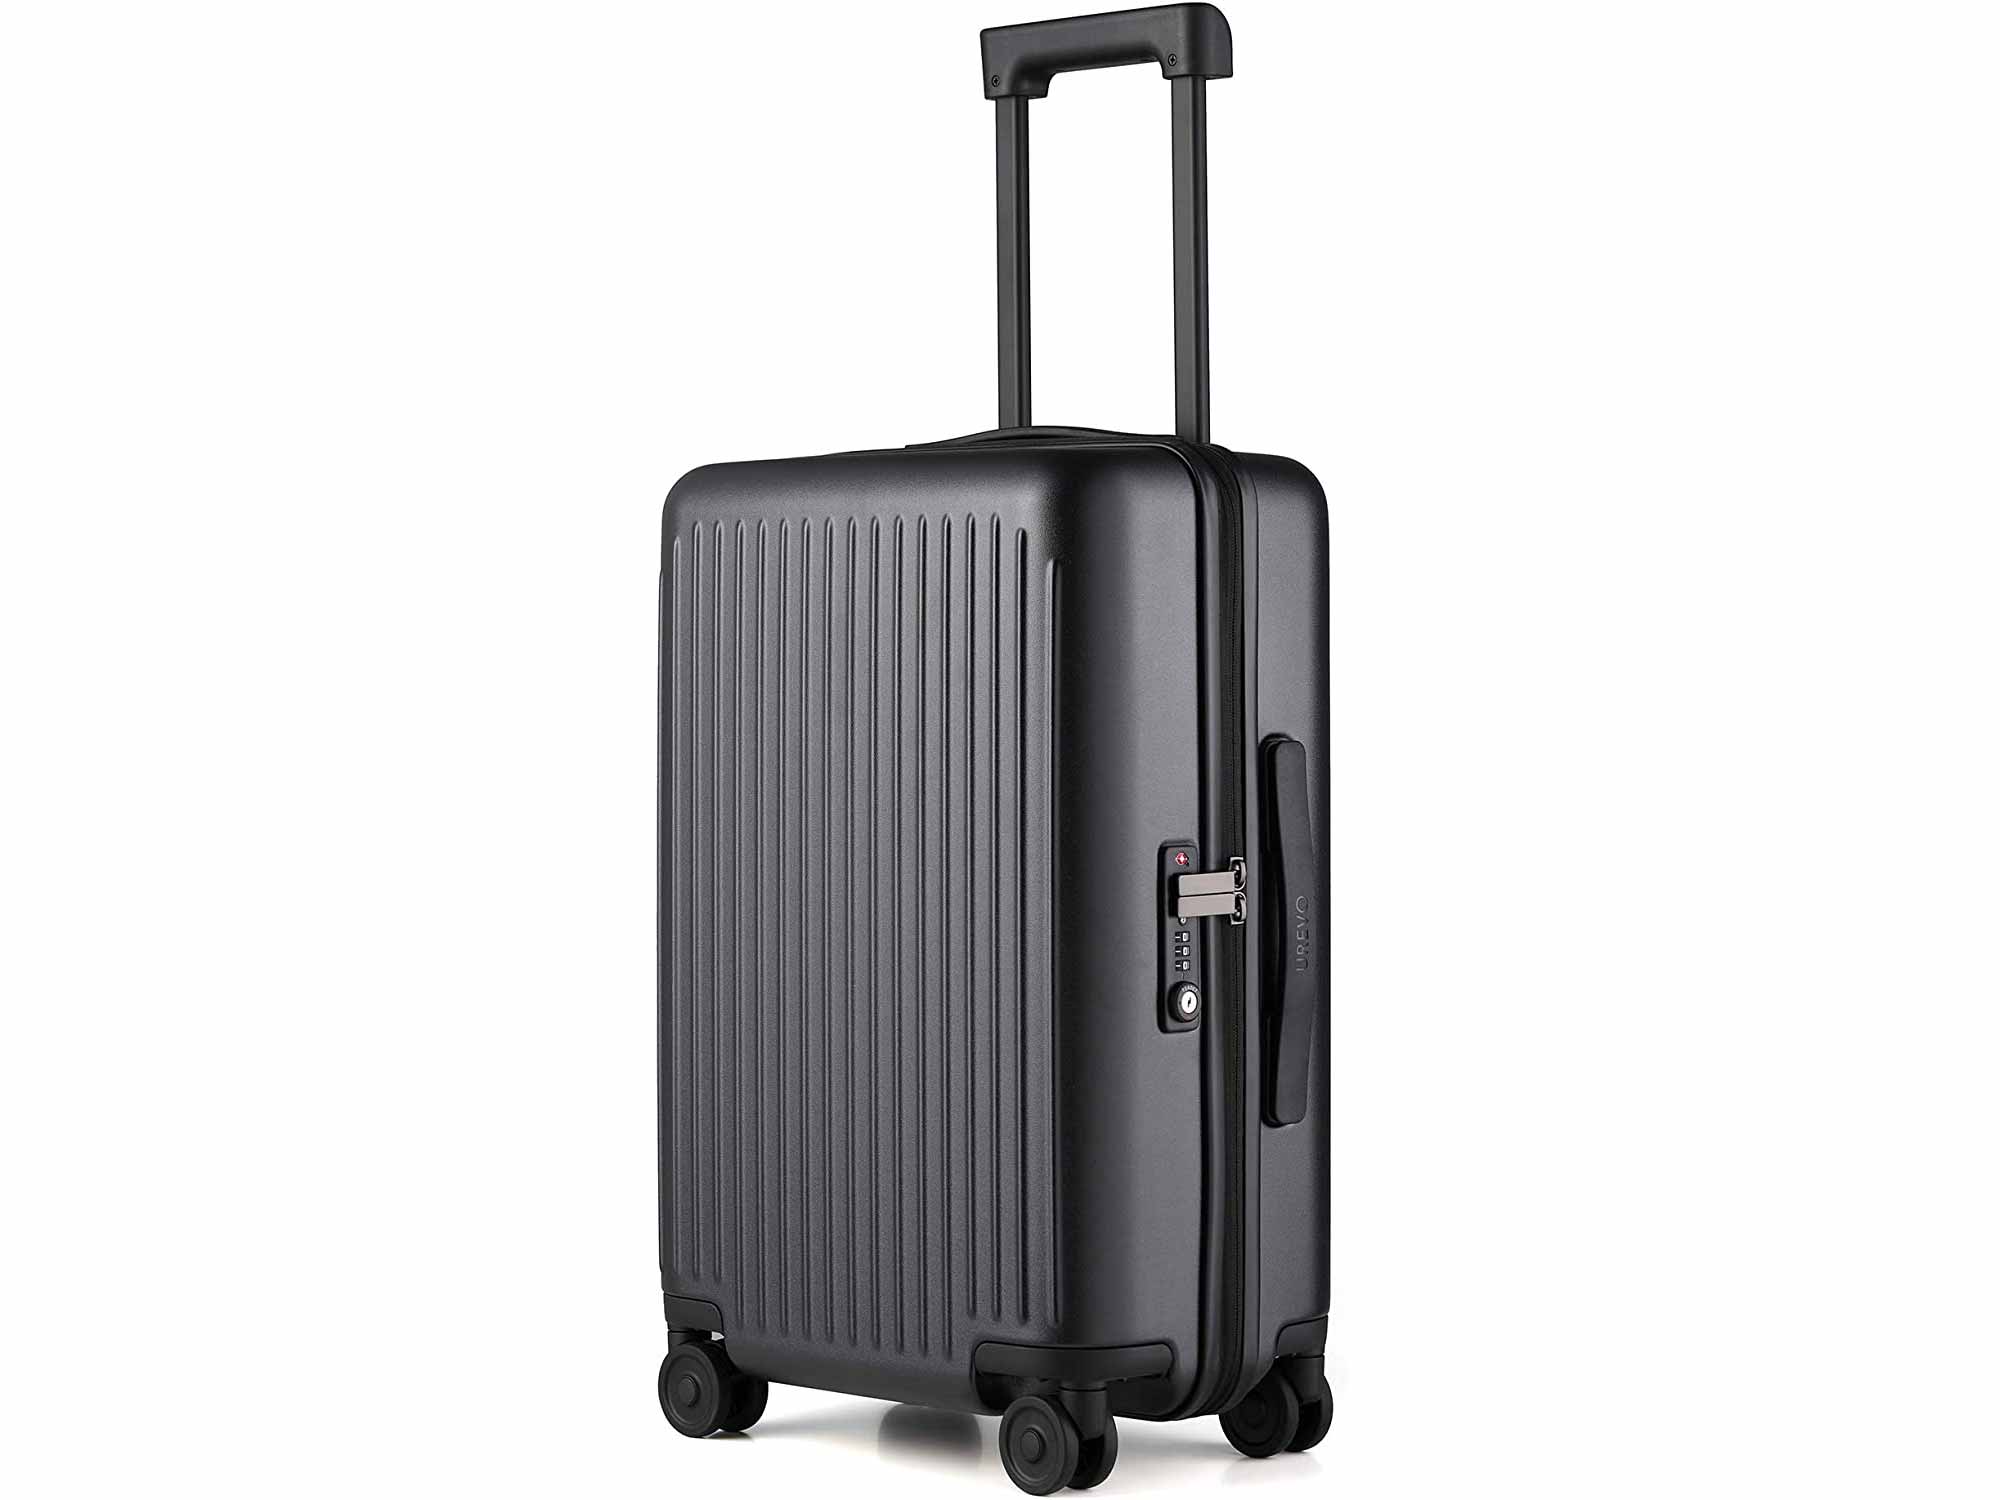 NINETYGO Hardside Luggage with Spinner Wheels, 100% Polycarbonate Geometric Suitcase with TSA Lock for Travel, Large Capacity & Stylish Sleek Design (24-inch Checked-Medium Black)